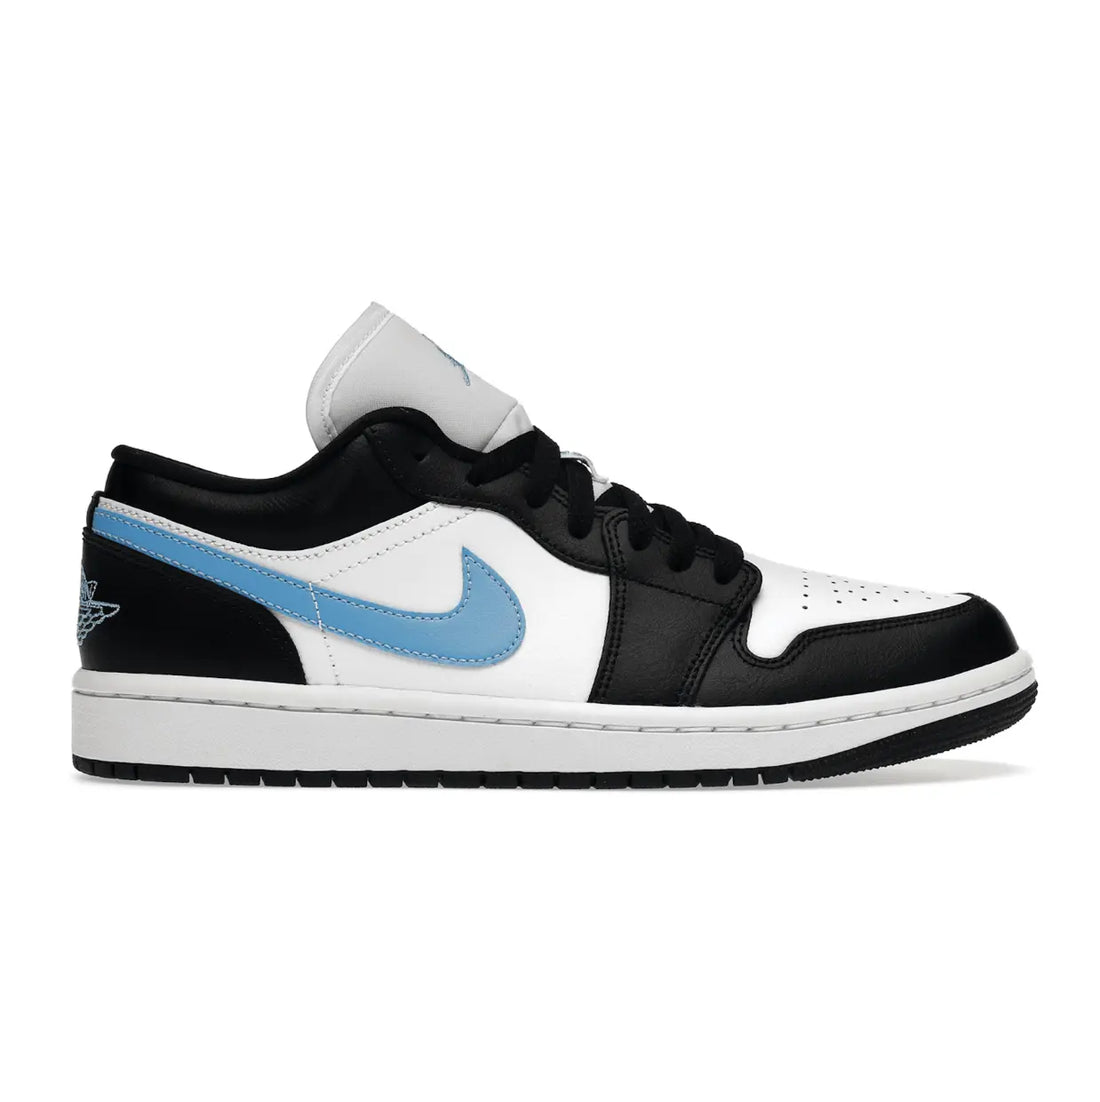 Jordan 1 Low Black University Blue White  SA Sneakers